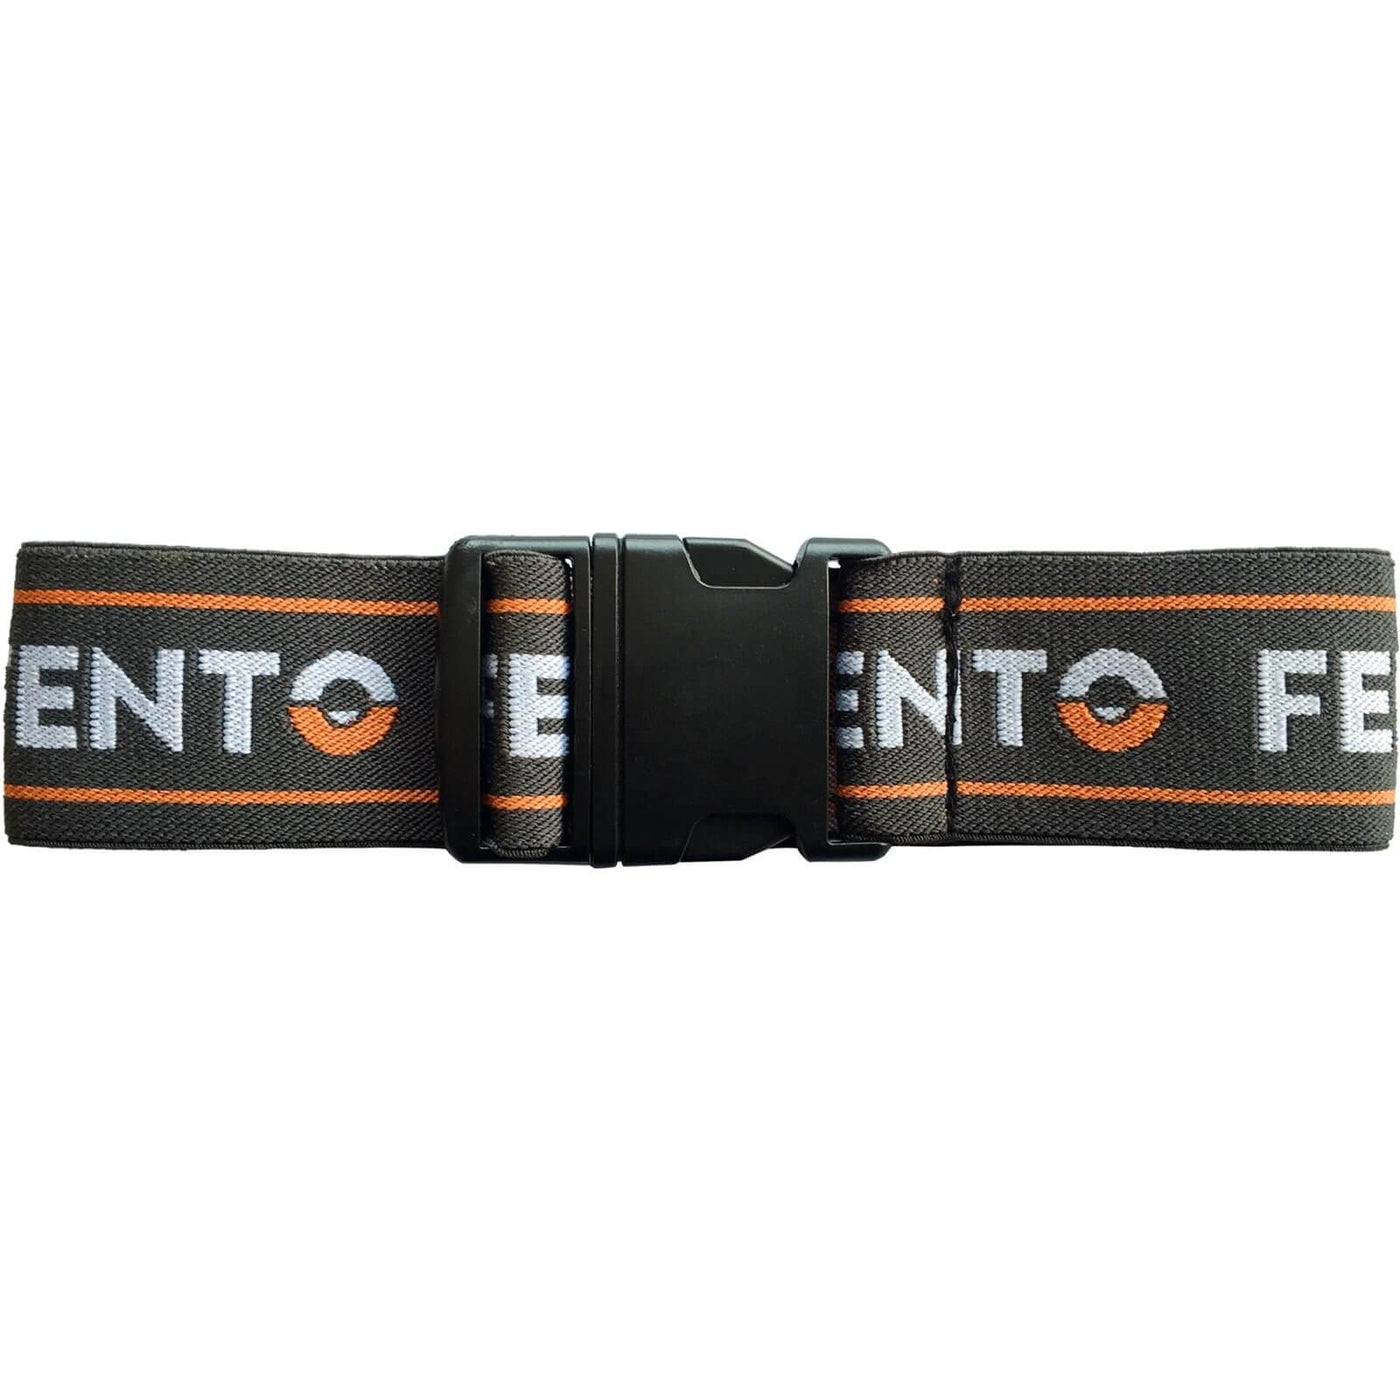 Fento 2 Elastics With Clip Fento Original Black/Orange 1#colour_black-orange